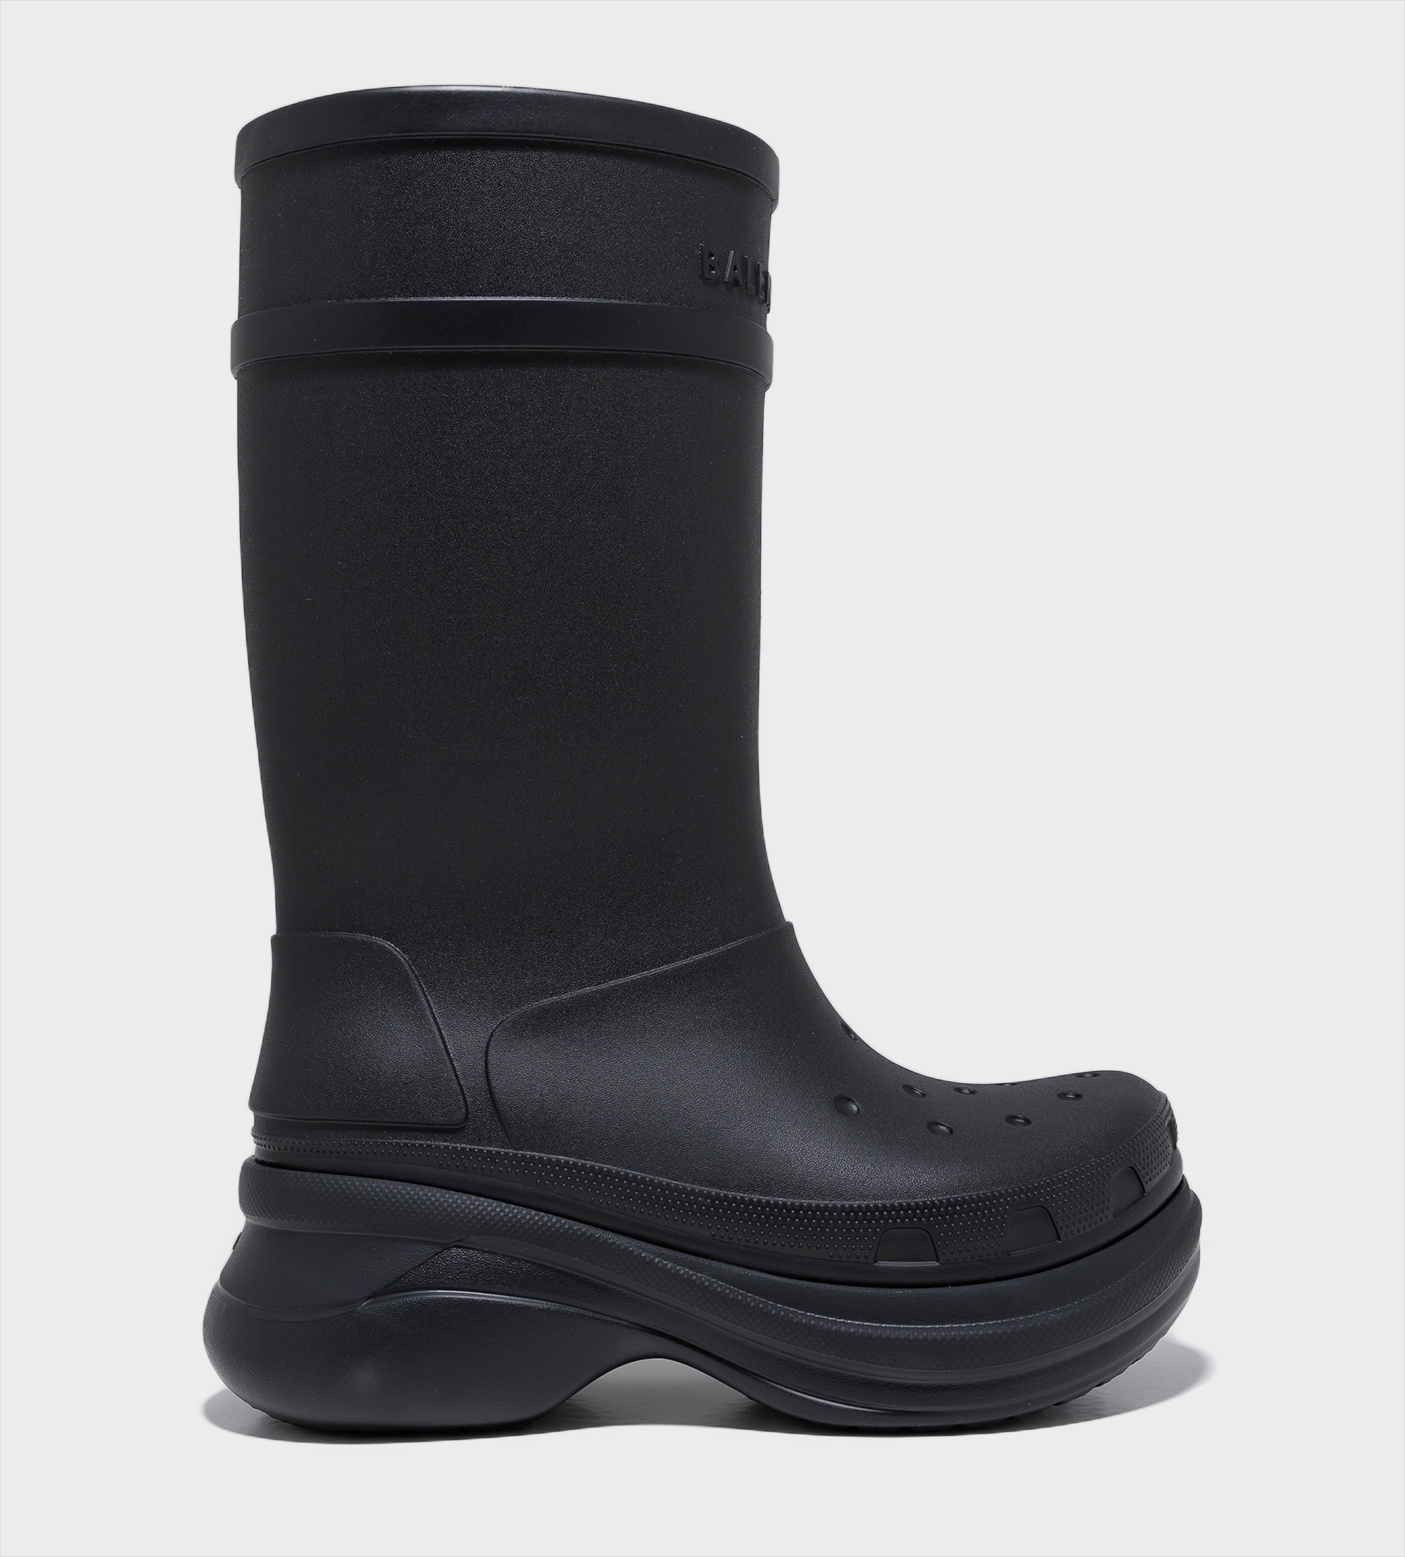 BALENCIAGA x Crocs Platform Boots Black